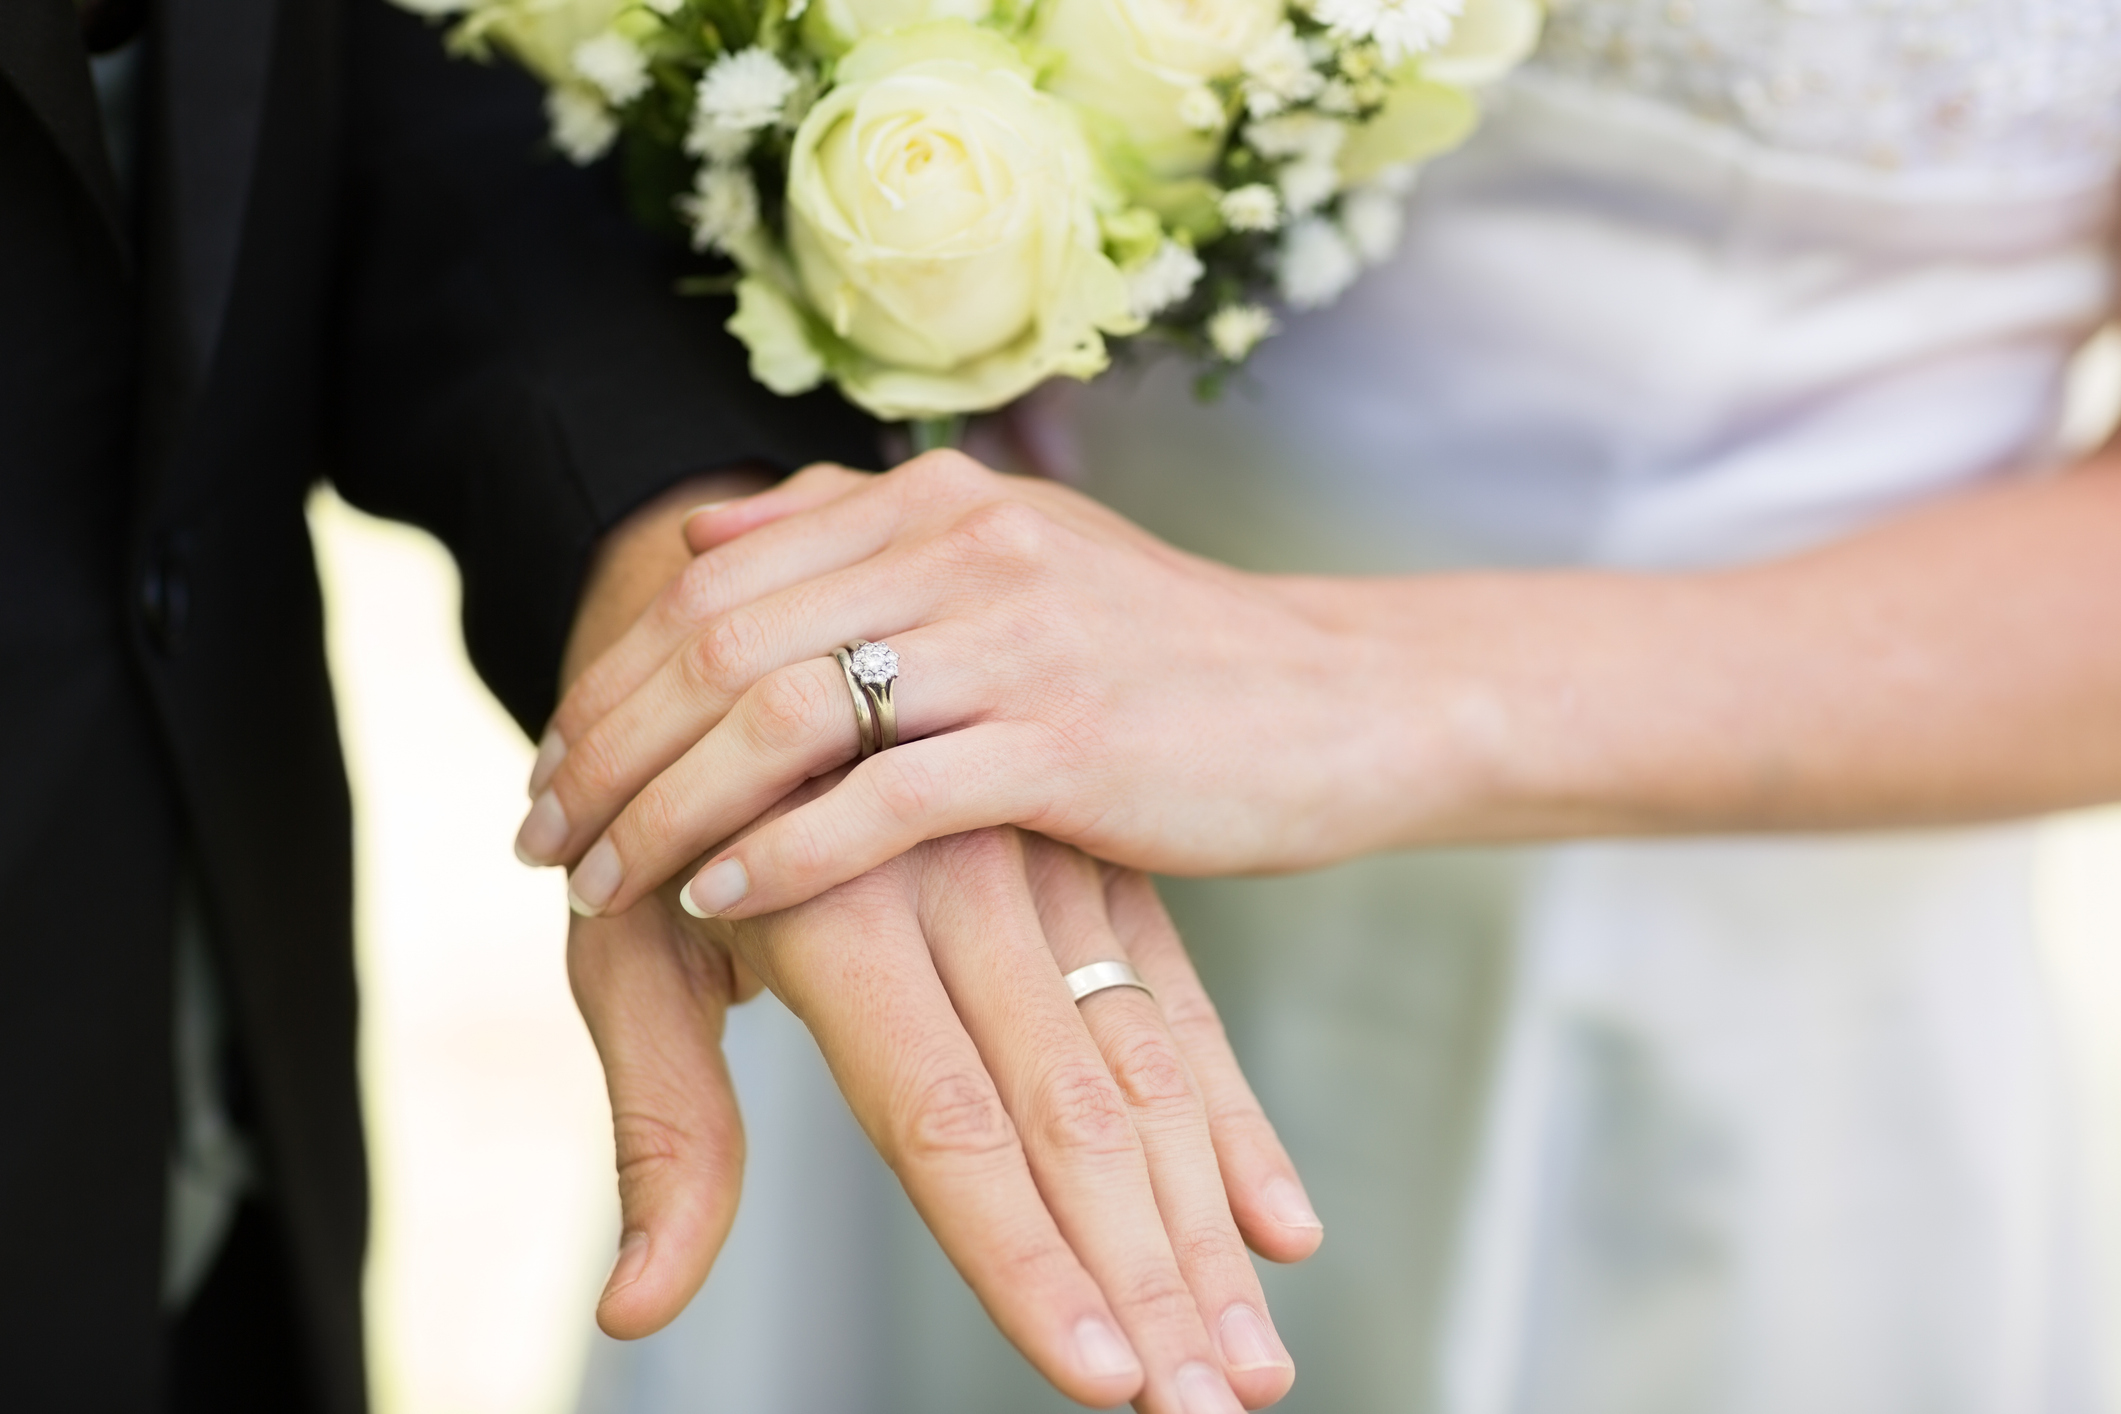 Картинка замужества. Руки молодоженов с кольцами. Свадебные кольца на руках. Руки жениха и невесты с кольцами. Обручальные и помолвочные кольца.